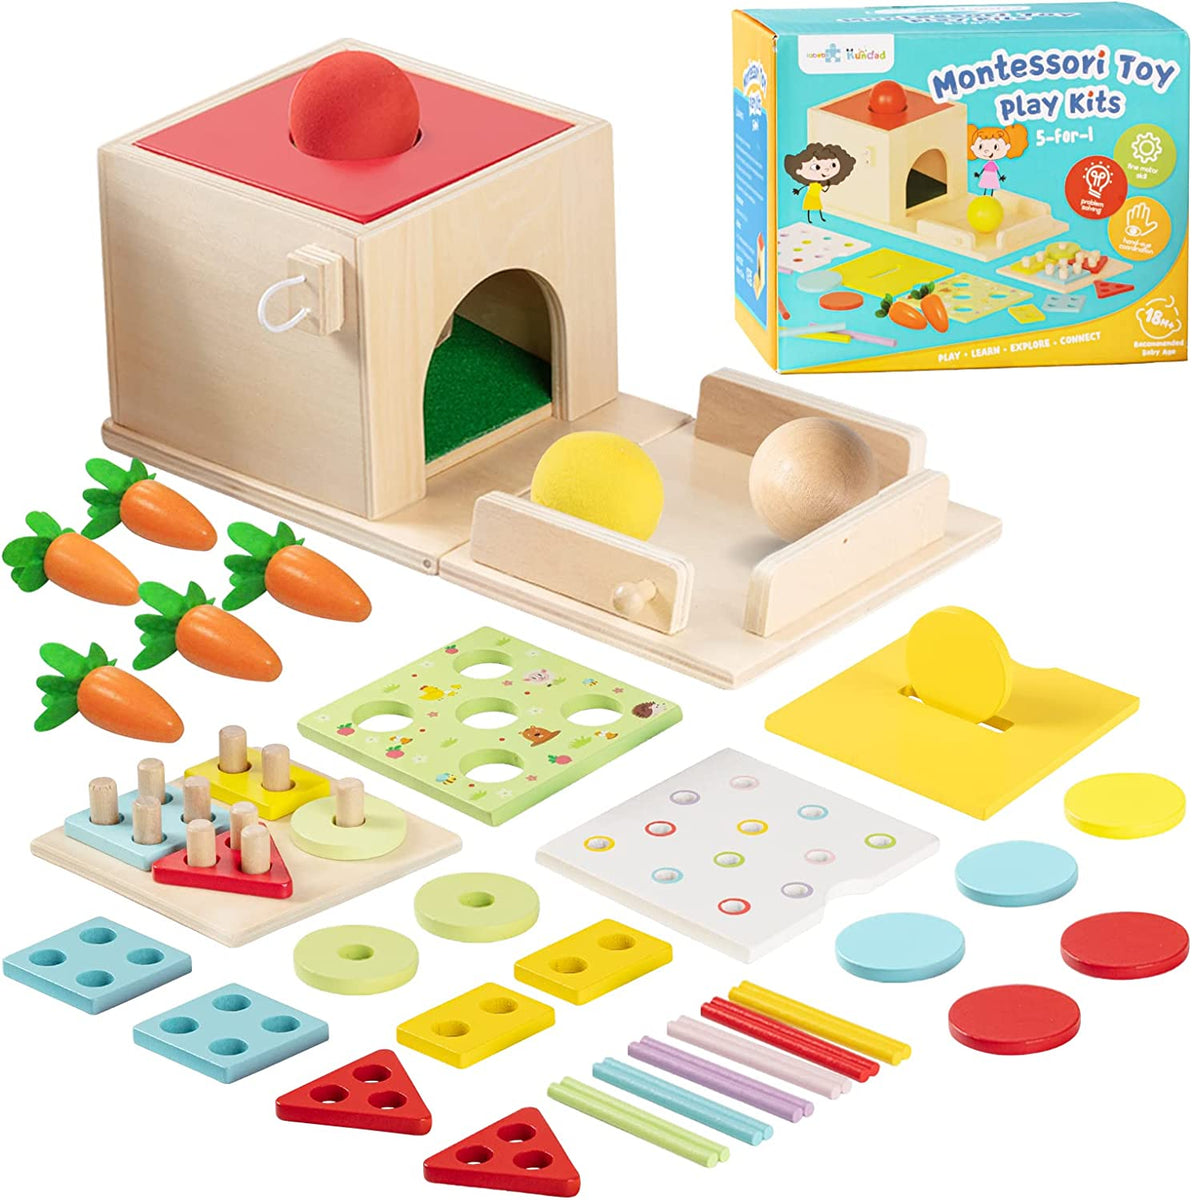 Cinqo- Jeux pour enfants 2 ans, Spellen Montessori, Jeux en bois 1